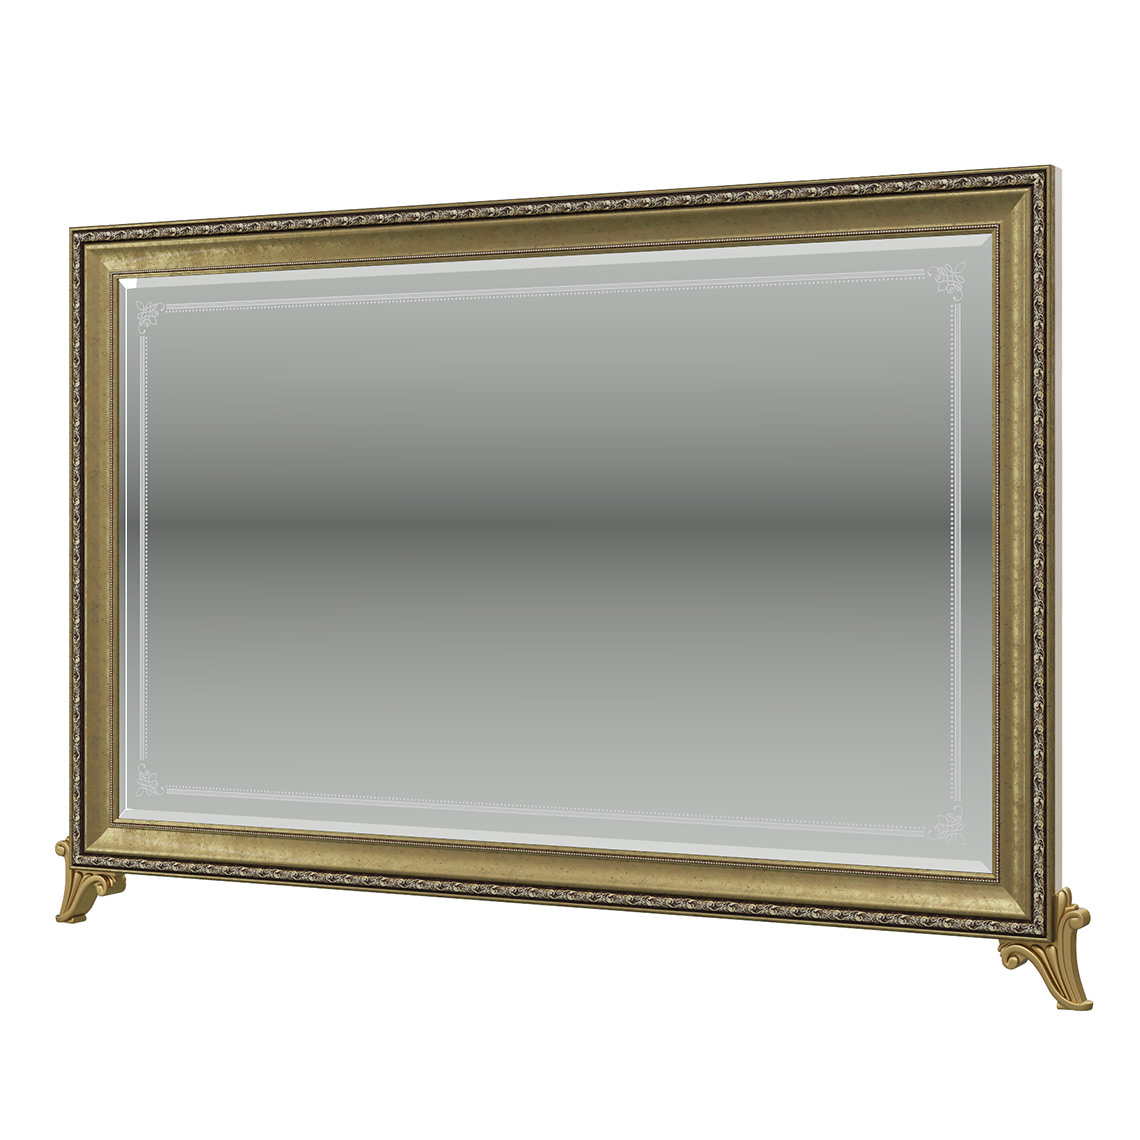 Зеркало Мэри-Мебель Версаль ГВ-06, цвет слоновая кость, 154х7х109 см.